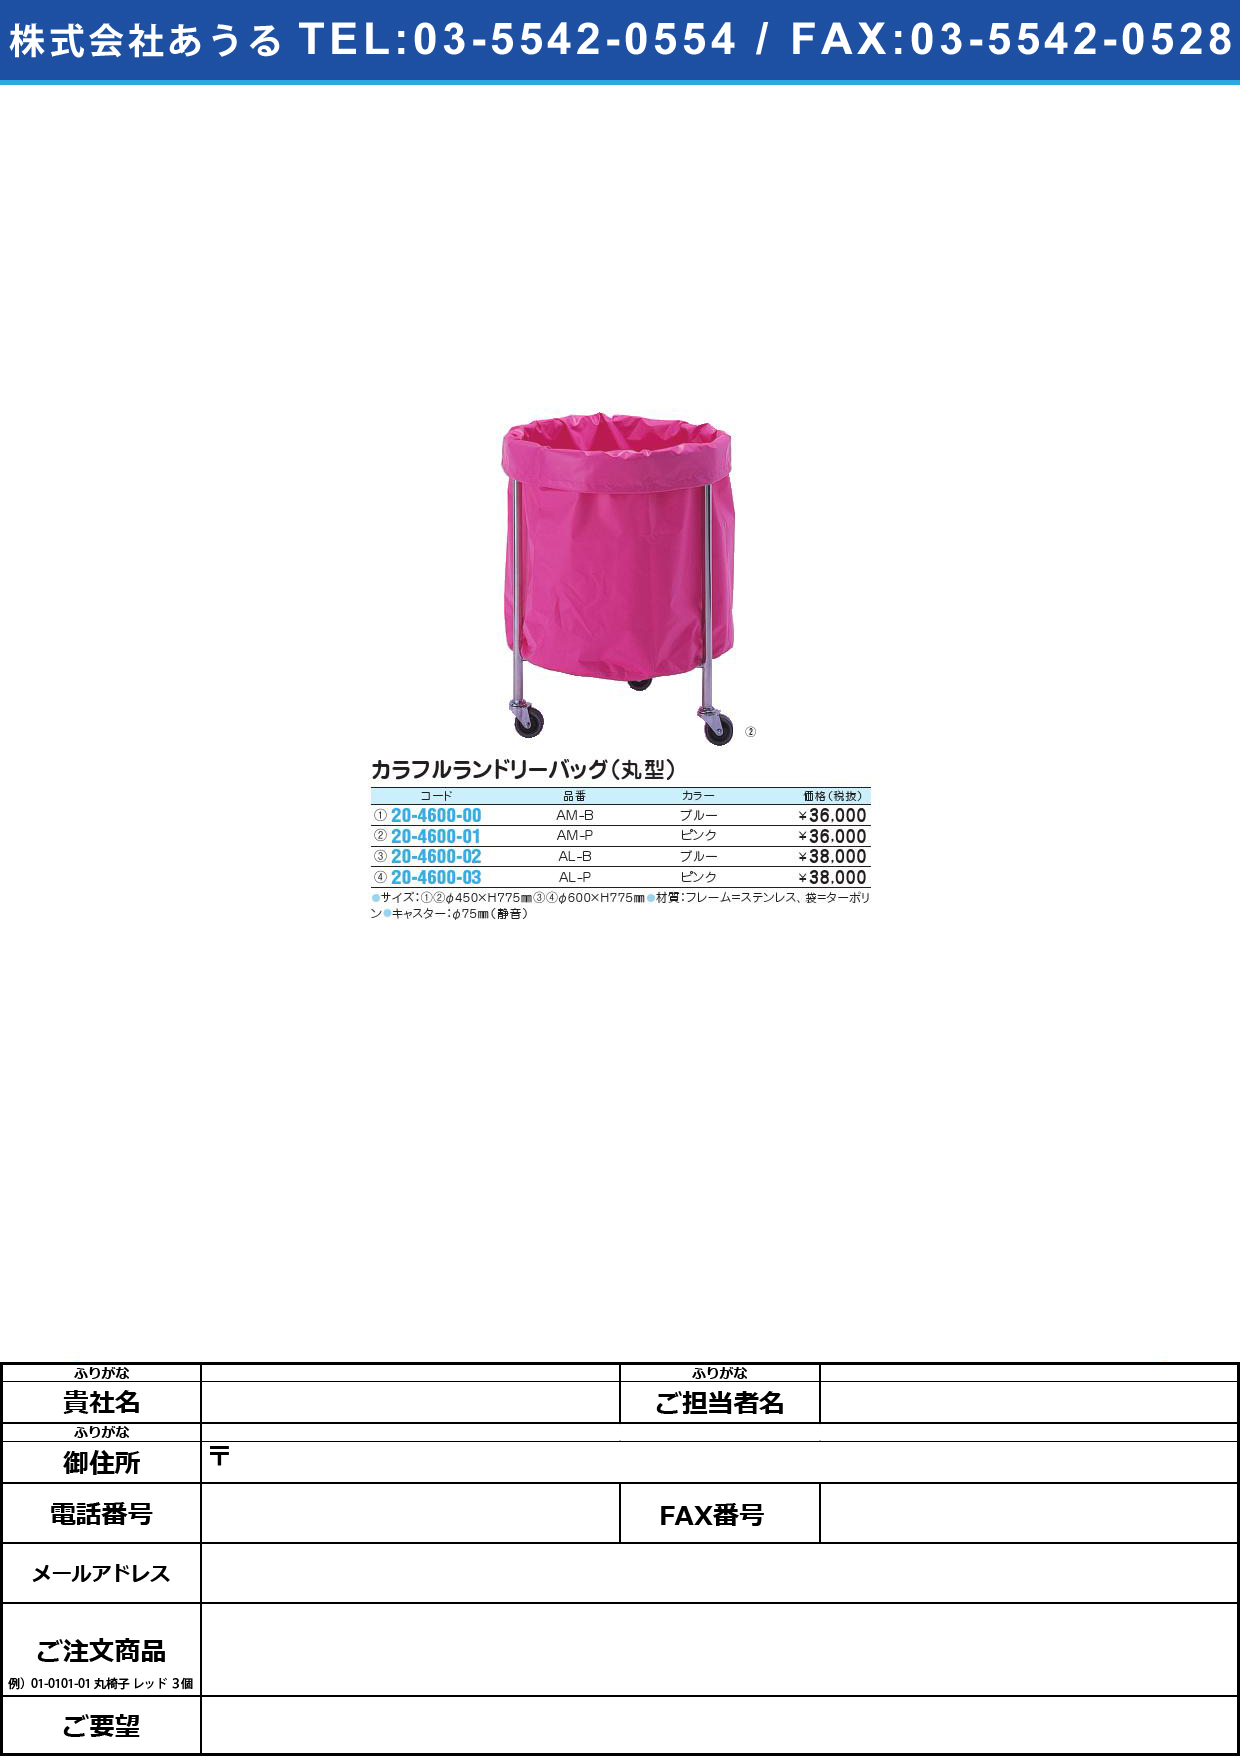 カラフルランドリーバッグ（丸型） SK-248･AM-B(ﾌﾞﾙｰ)ｶﾗﾌﾙﾗﾝﾄﾞﾘｰﾊﾞｯｸﾞﾏﾙｶﾞﾀ(20-4600-00)【1台単位】